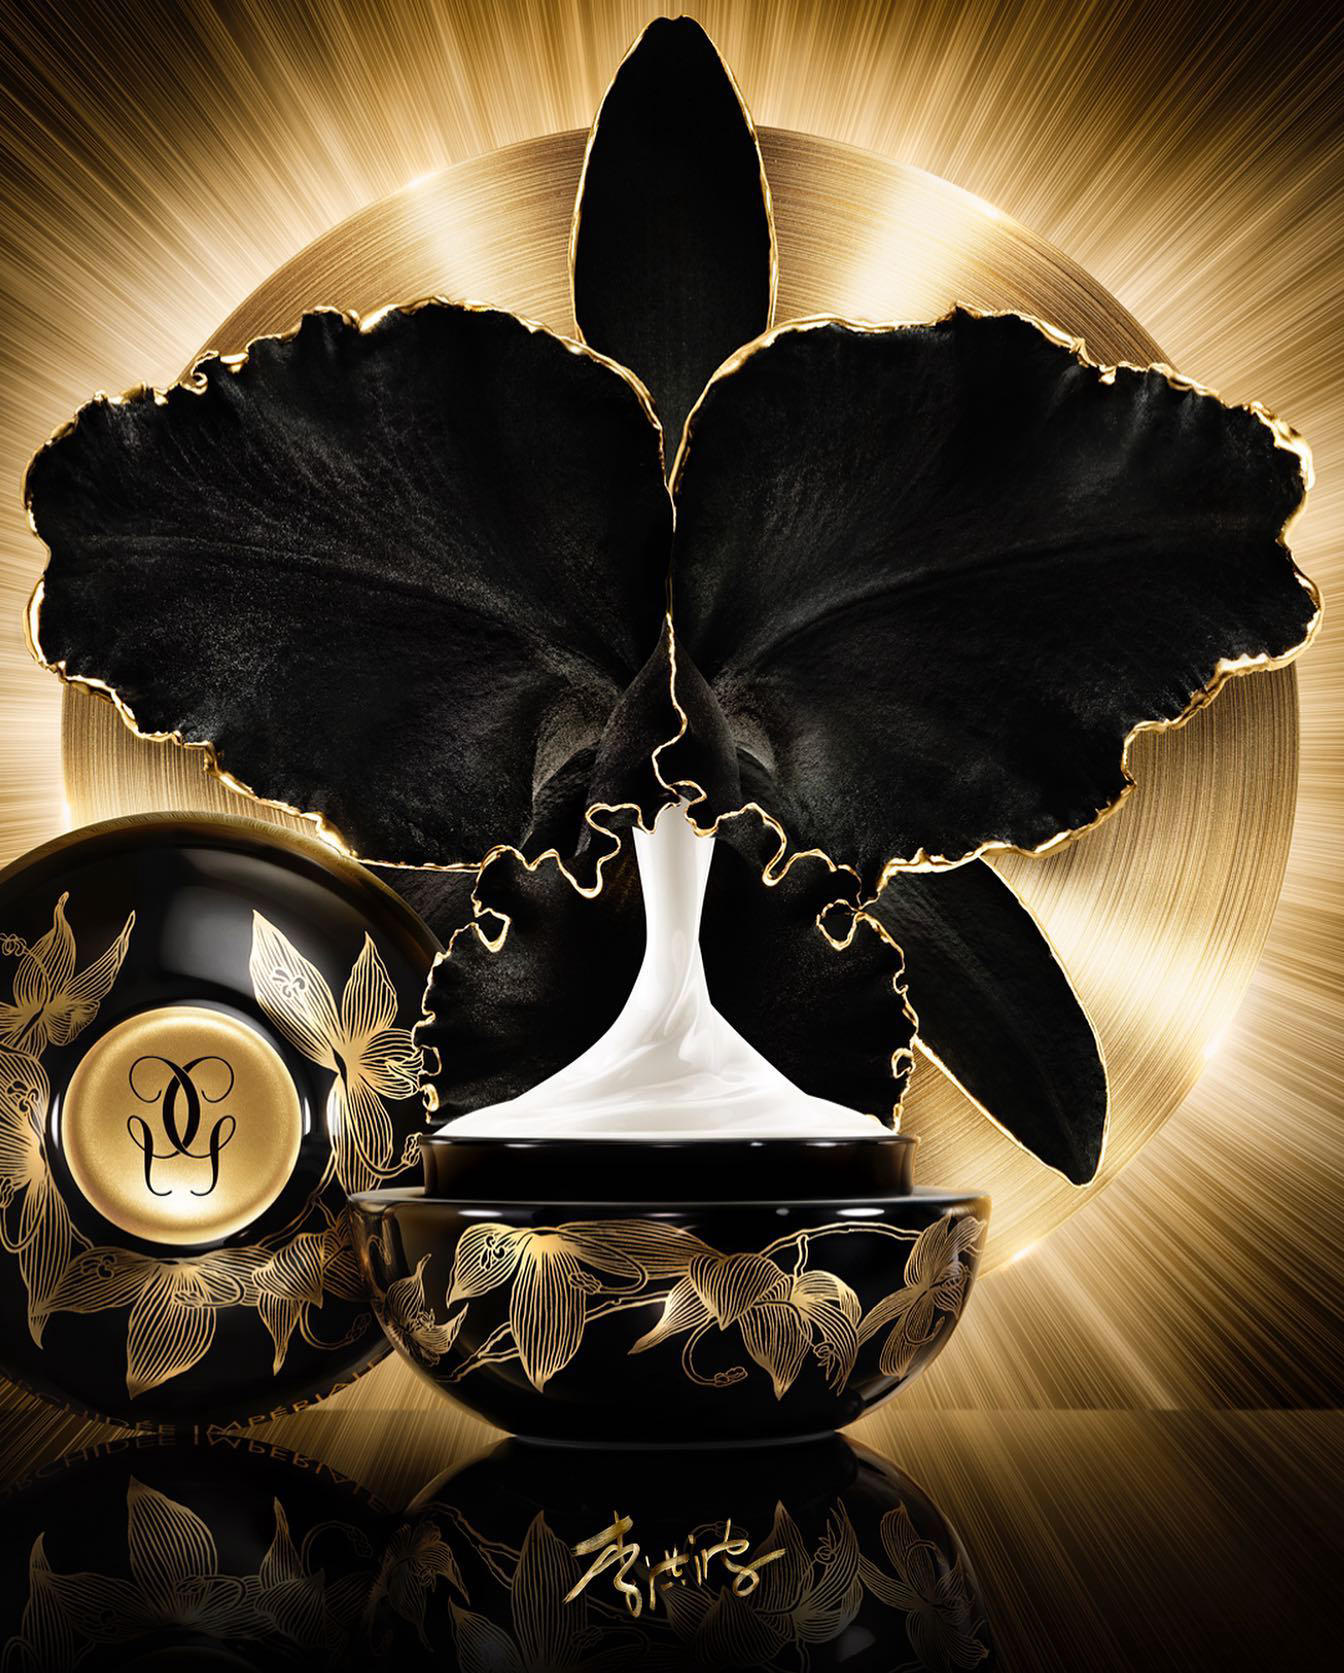 Guerlain - Introducing Orchidée Impériale Black